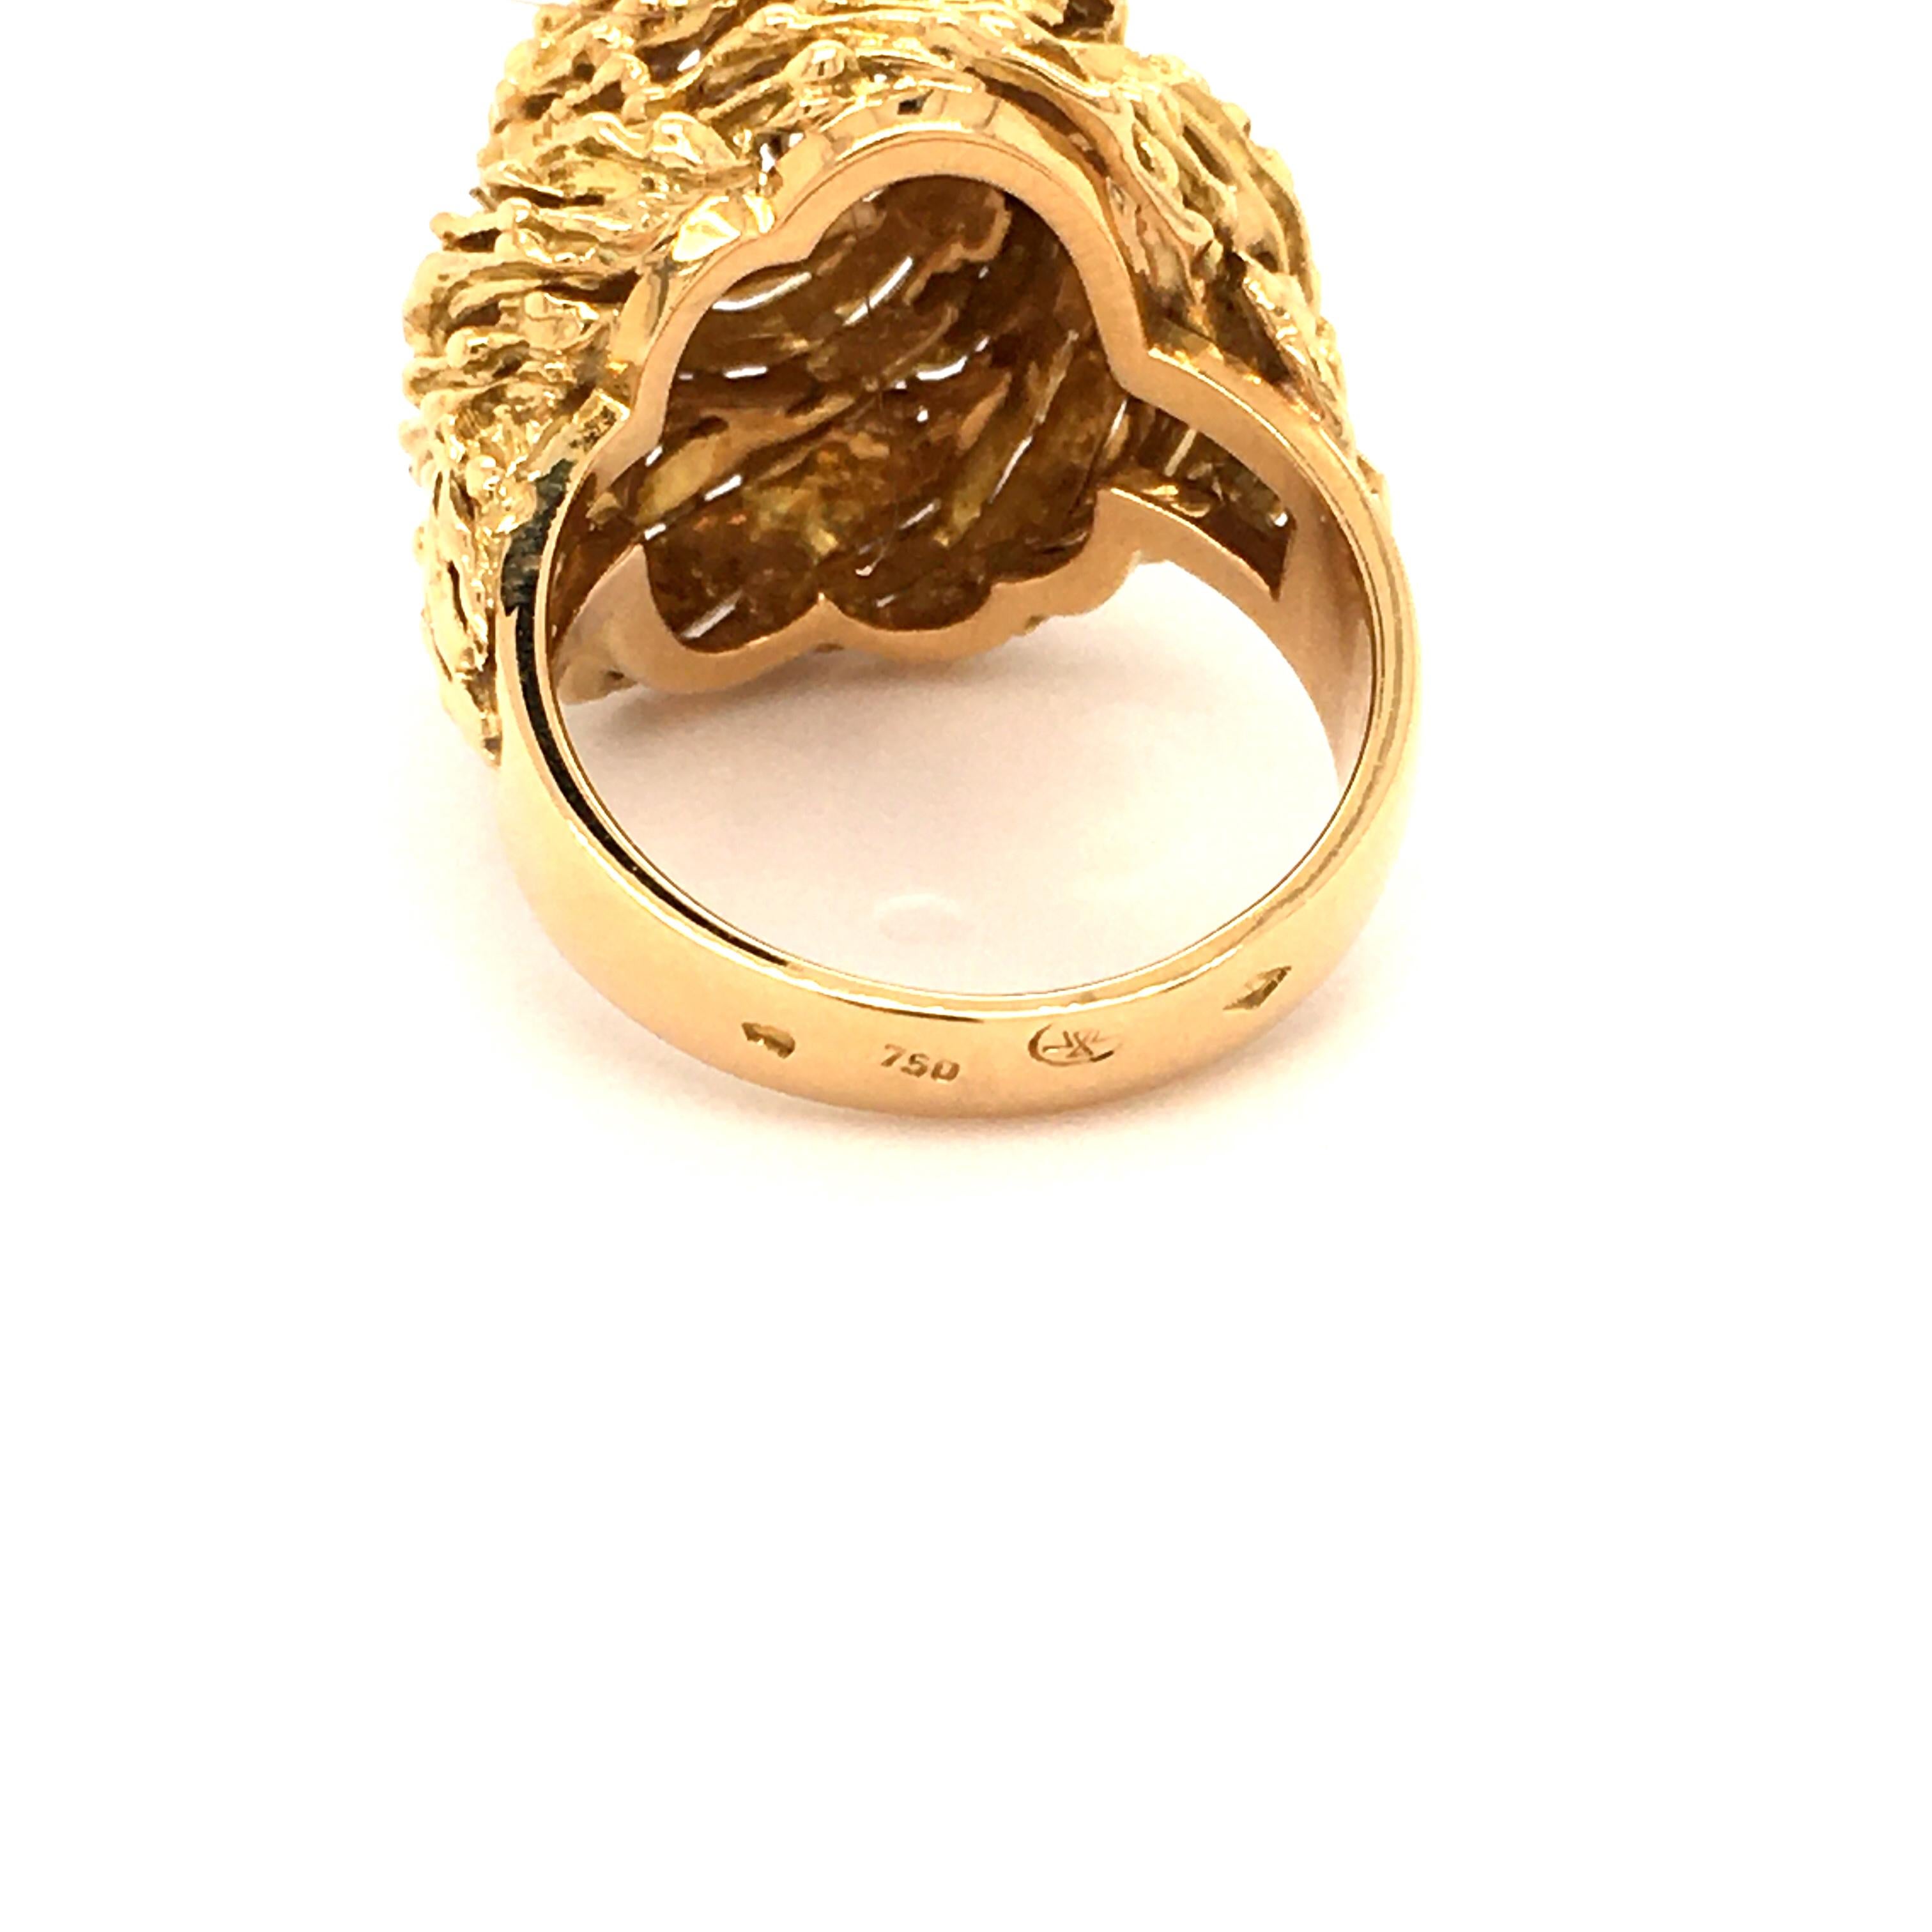 Gubelin Diamond Ring in 18 Karat Yellow and White Gold 4